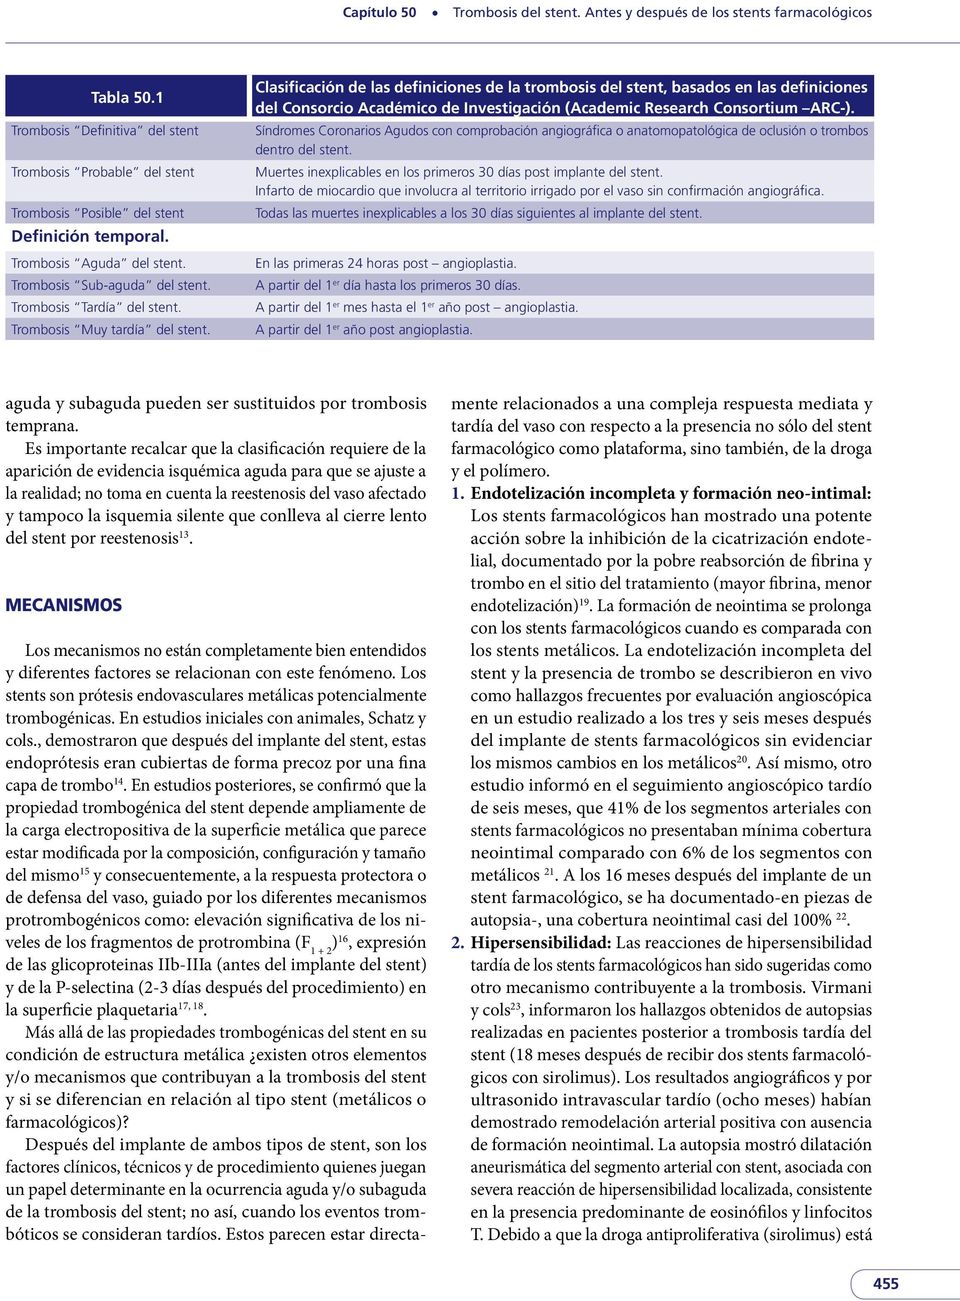 Clasificación de las definiciones de la trombosis del stent, basados en las definiciones del Consorcio Académico de Investigación (Academic Research Consortium ARC-).